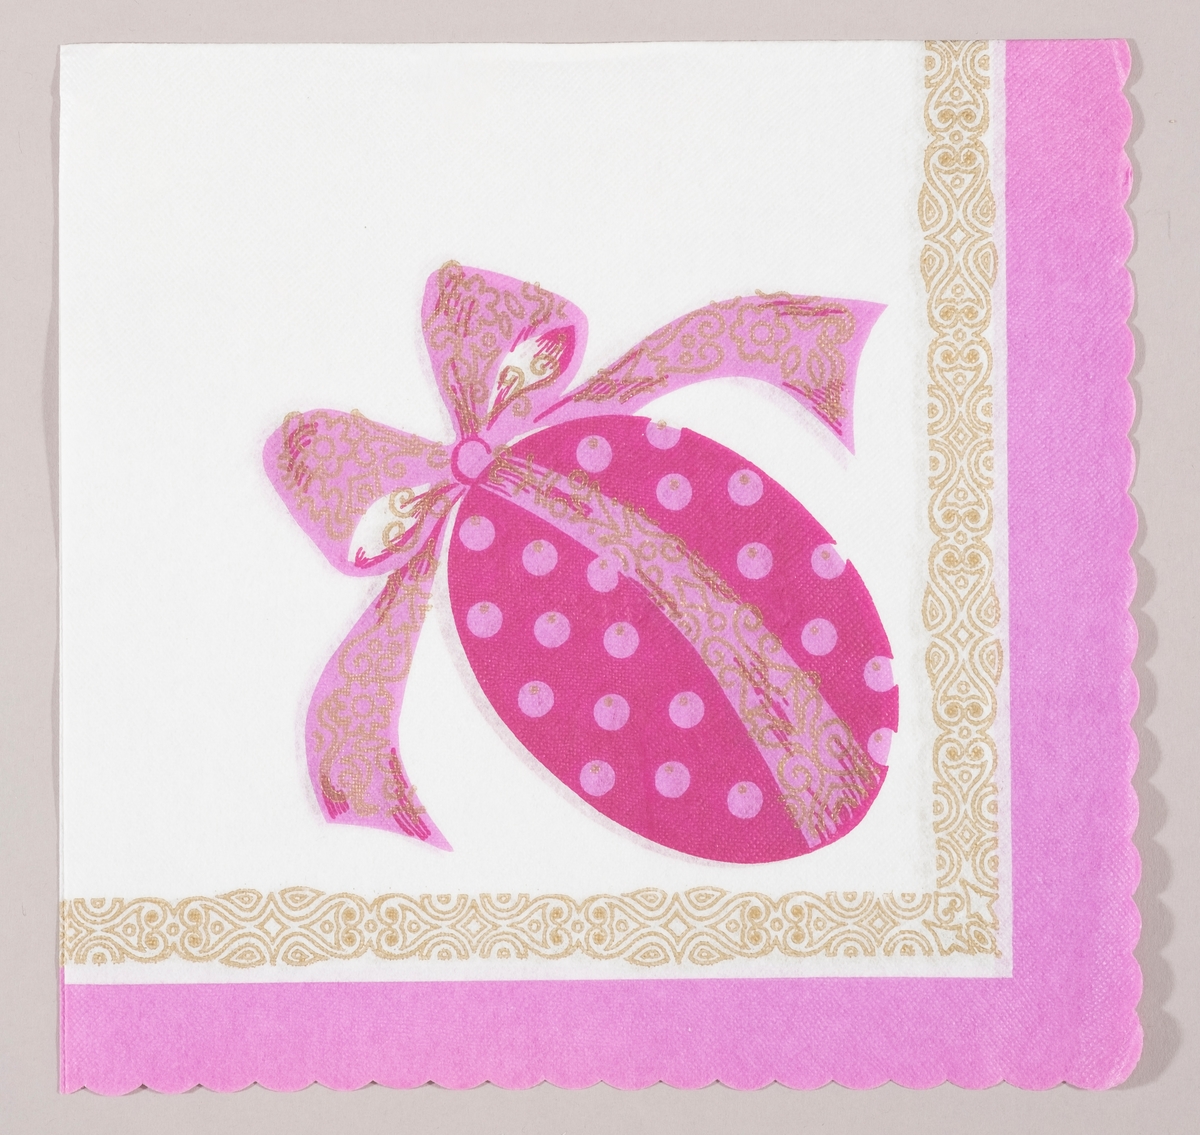 Et lilla påskeegg med rosa prikker og en stor rosa sløyfe med gullmønster. En mønstret bord i gull og lilla kant.